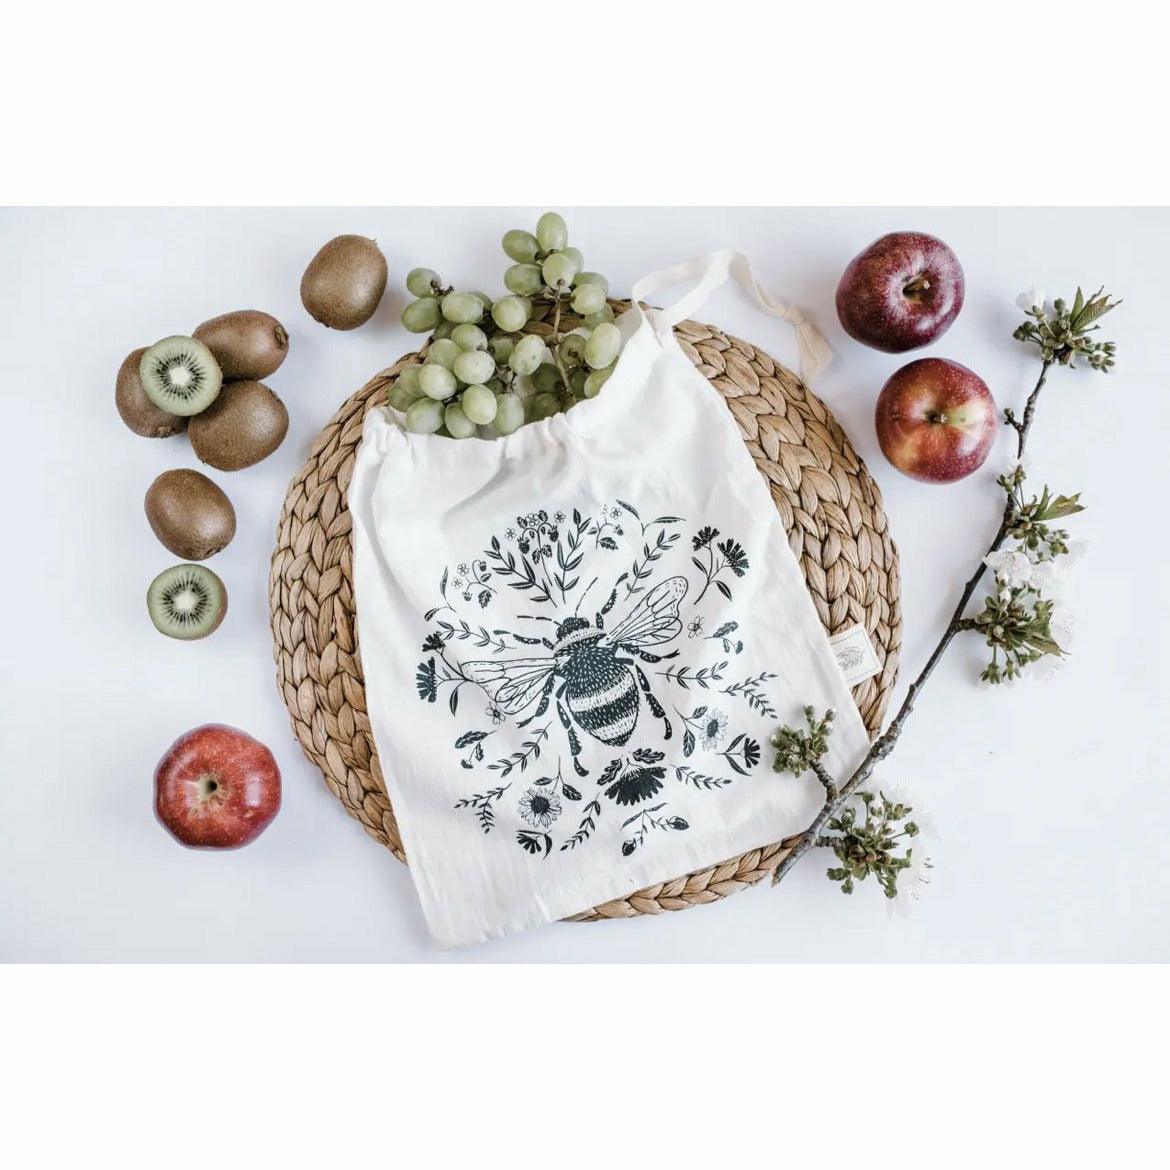 Reusable Produce Bag - Set of 2, Bulk Food Bags - Ninth & Pine